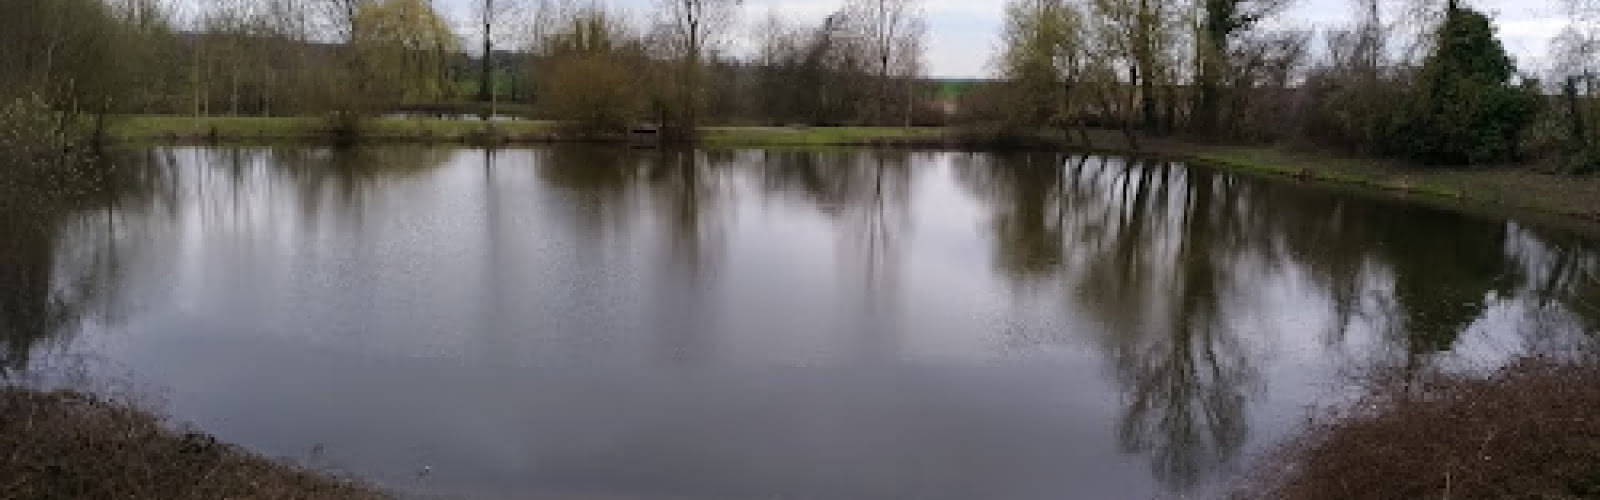 Les étangs de Saint Witz